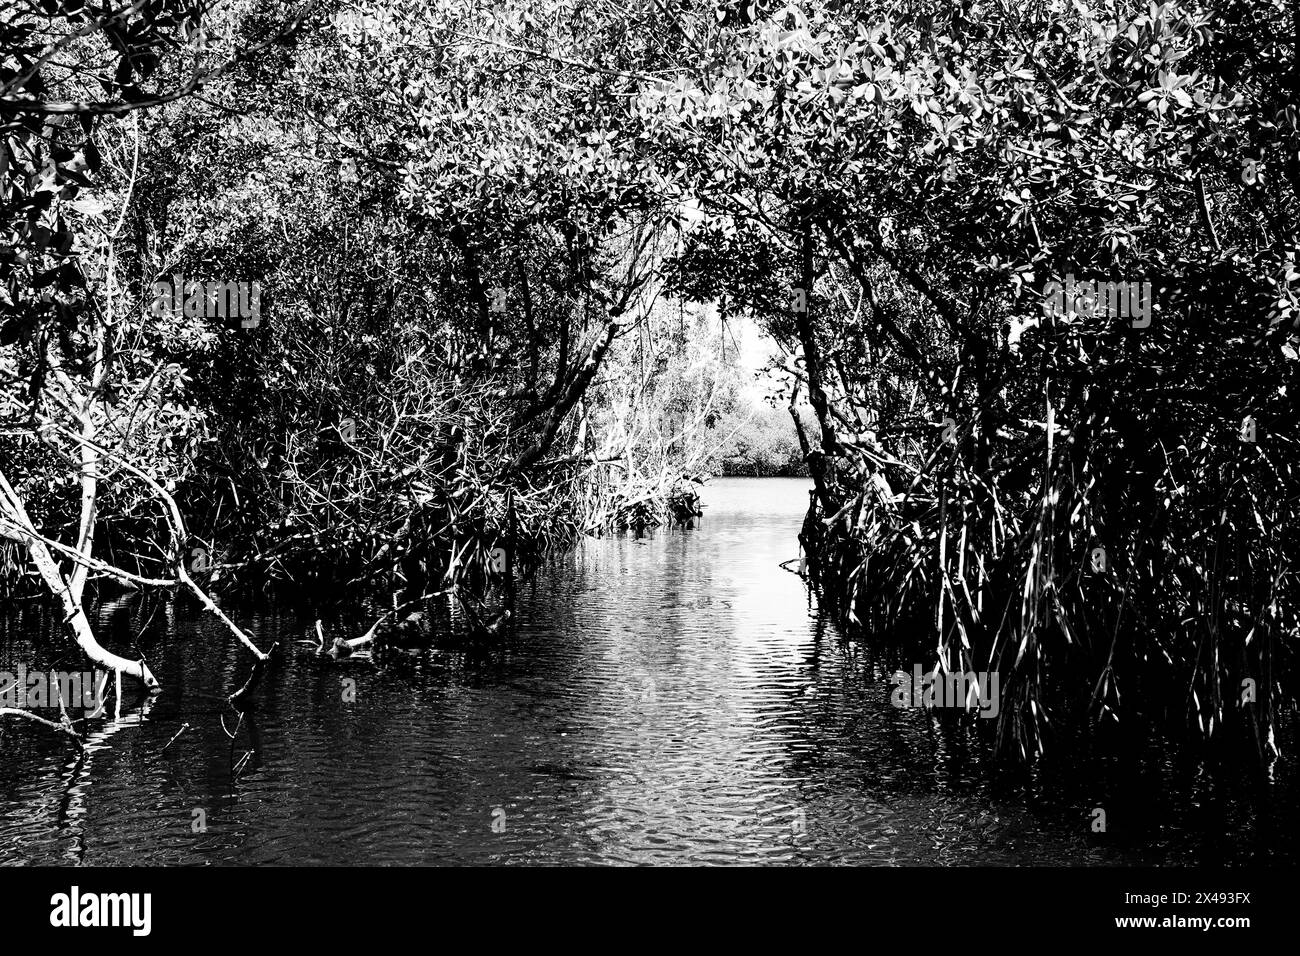 17.04.24, Everglades City, Florida, Vereinigte Staaten Ansicht von Mangroven in den Florida Everglades von einem Luftschiff aus gesehen, Everglade City, Florida, Mittwoch, 17. April, 2024. Foto von Jennifer Graylock-Graylock.com 917-519-7666 Stockfoto